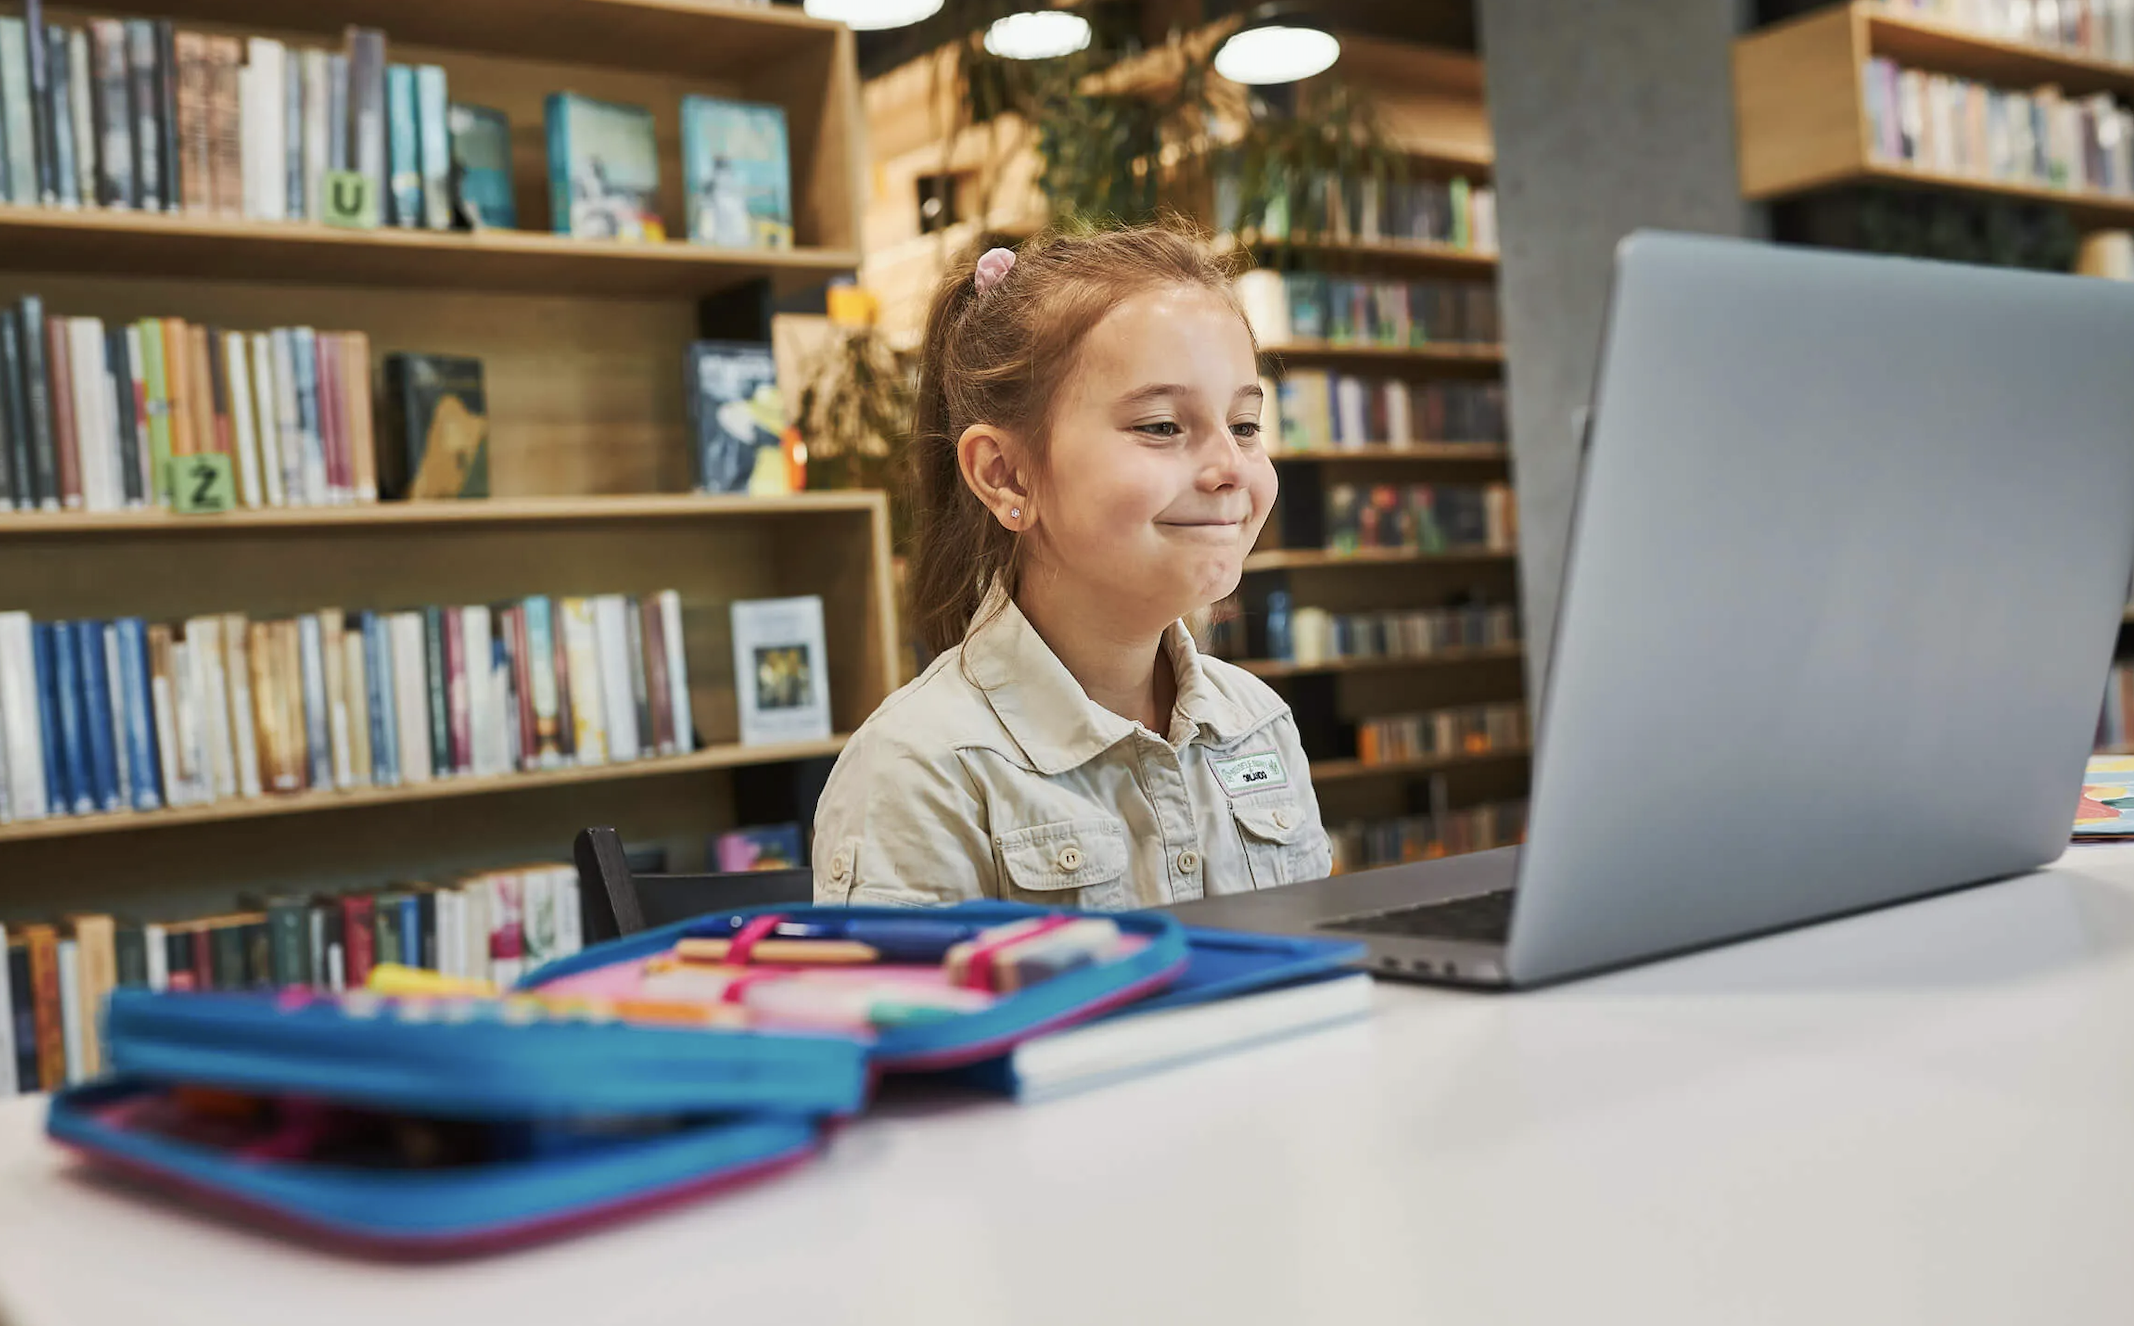 Aces Direct en Stichting Digidromen helpen kinderen met opgeknapte laptops